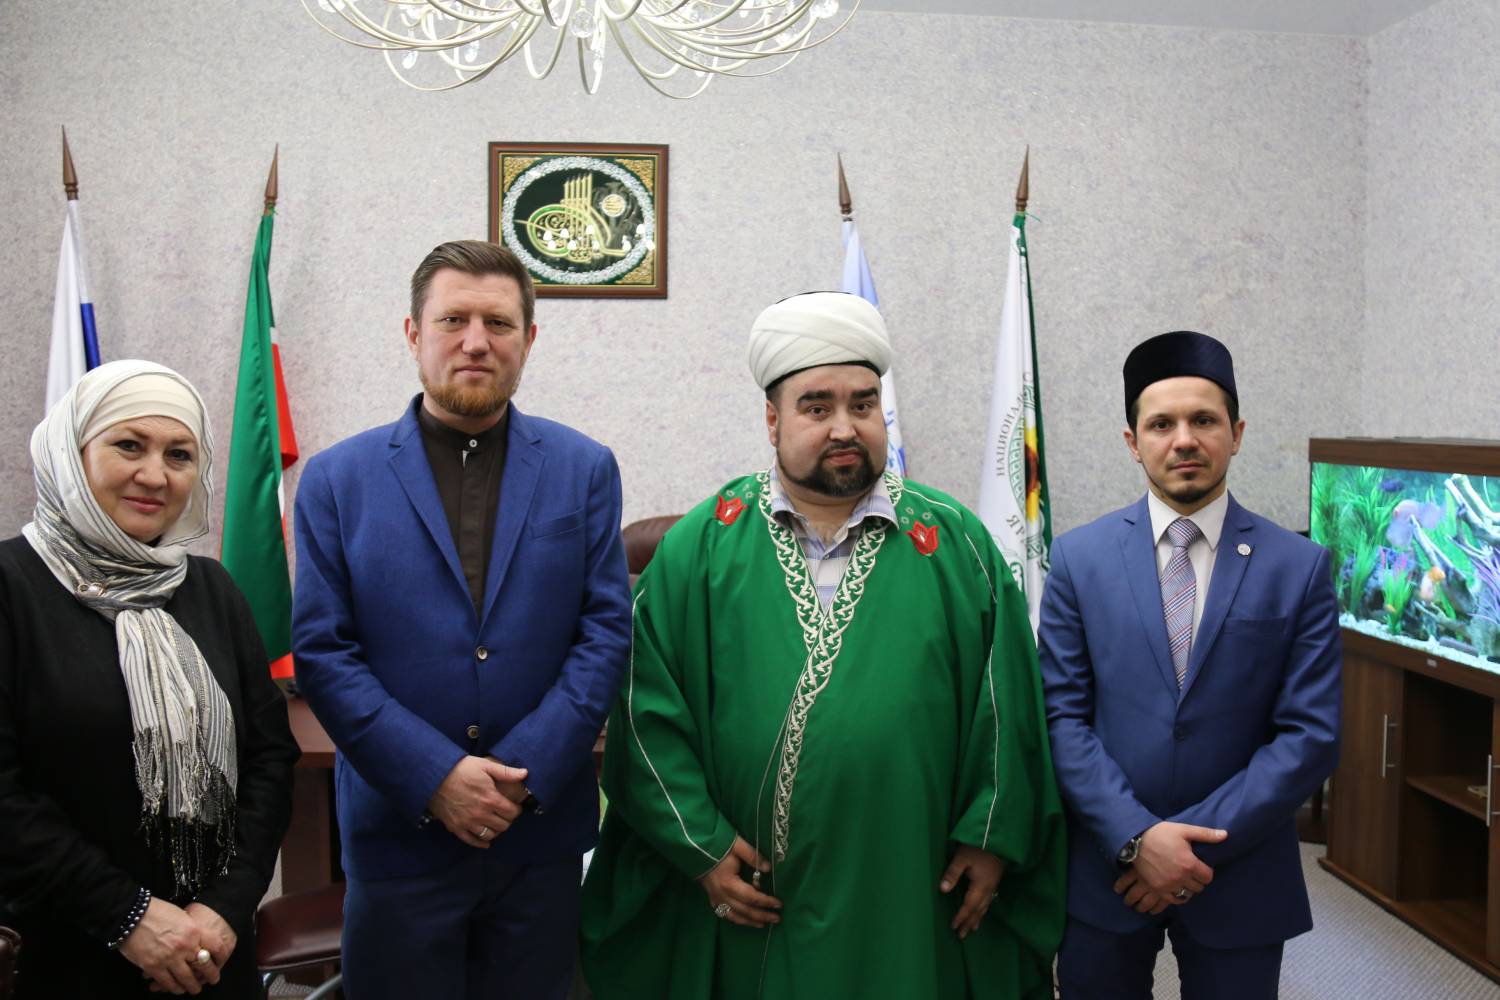 Фонду "Ярдэм" вручили благодарность из Самарской области